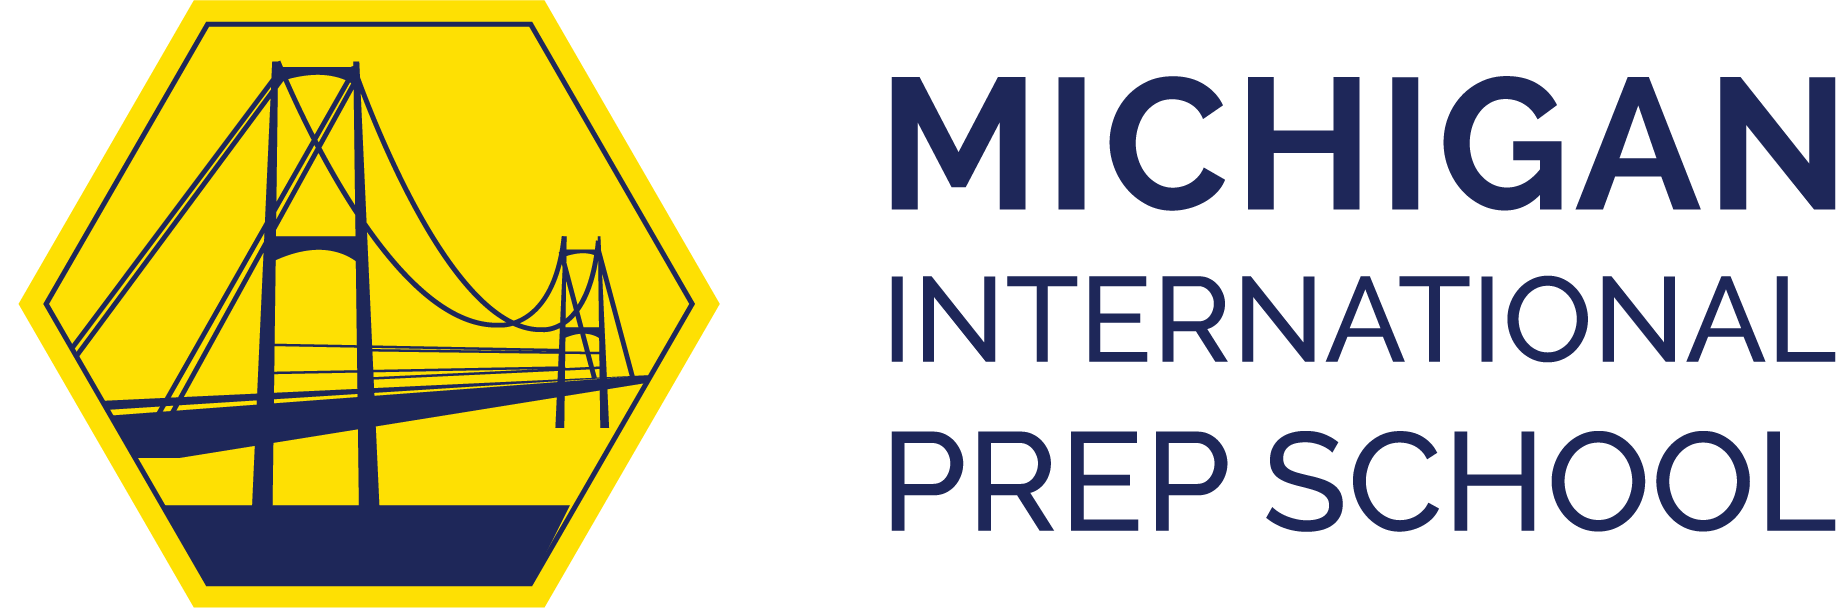 MIPS logo